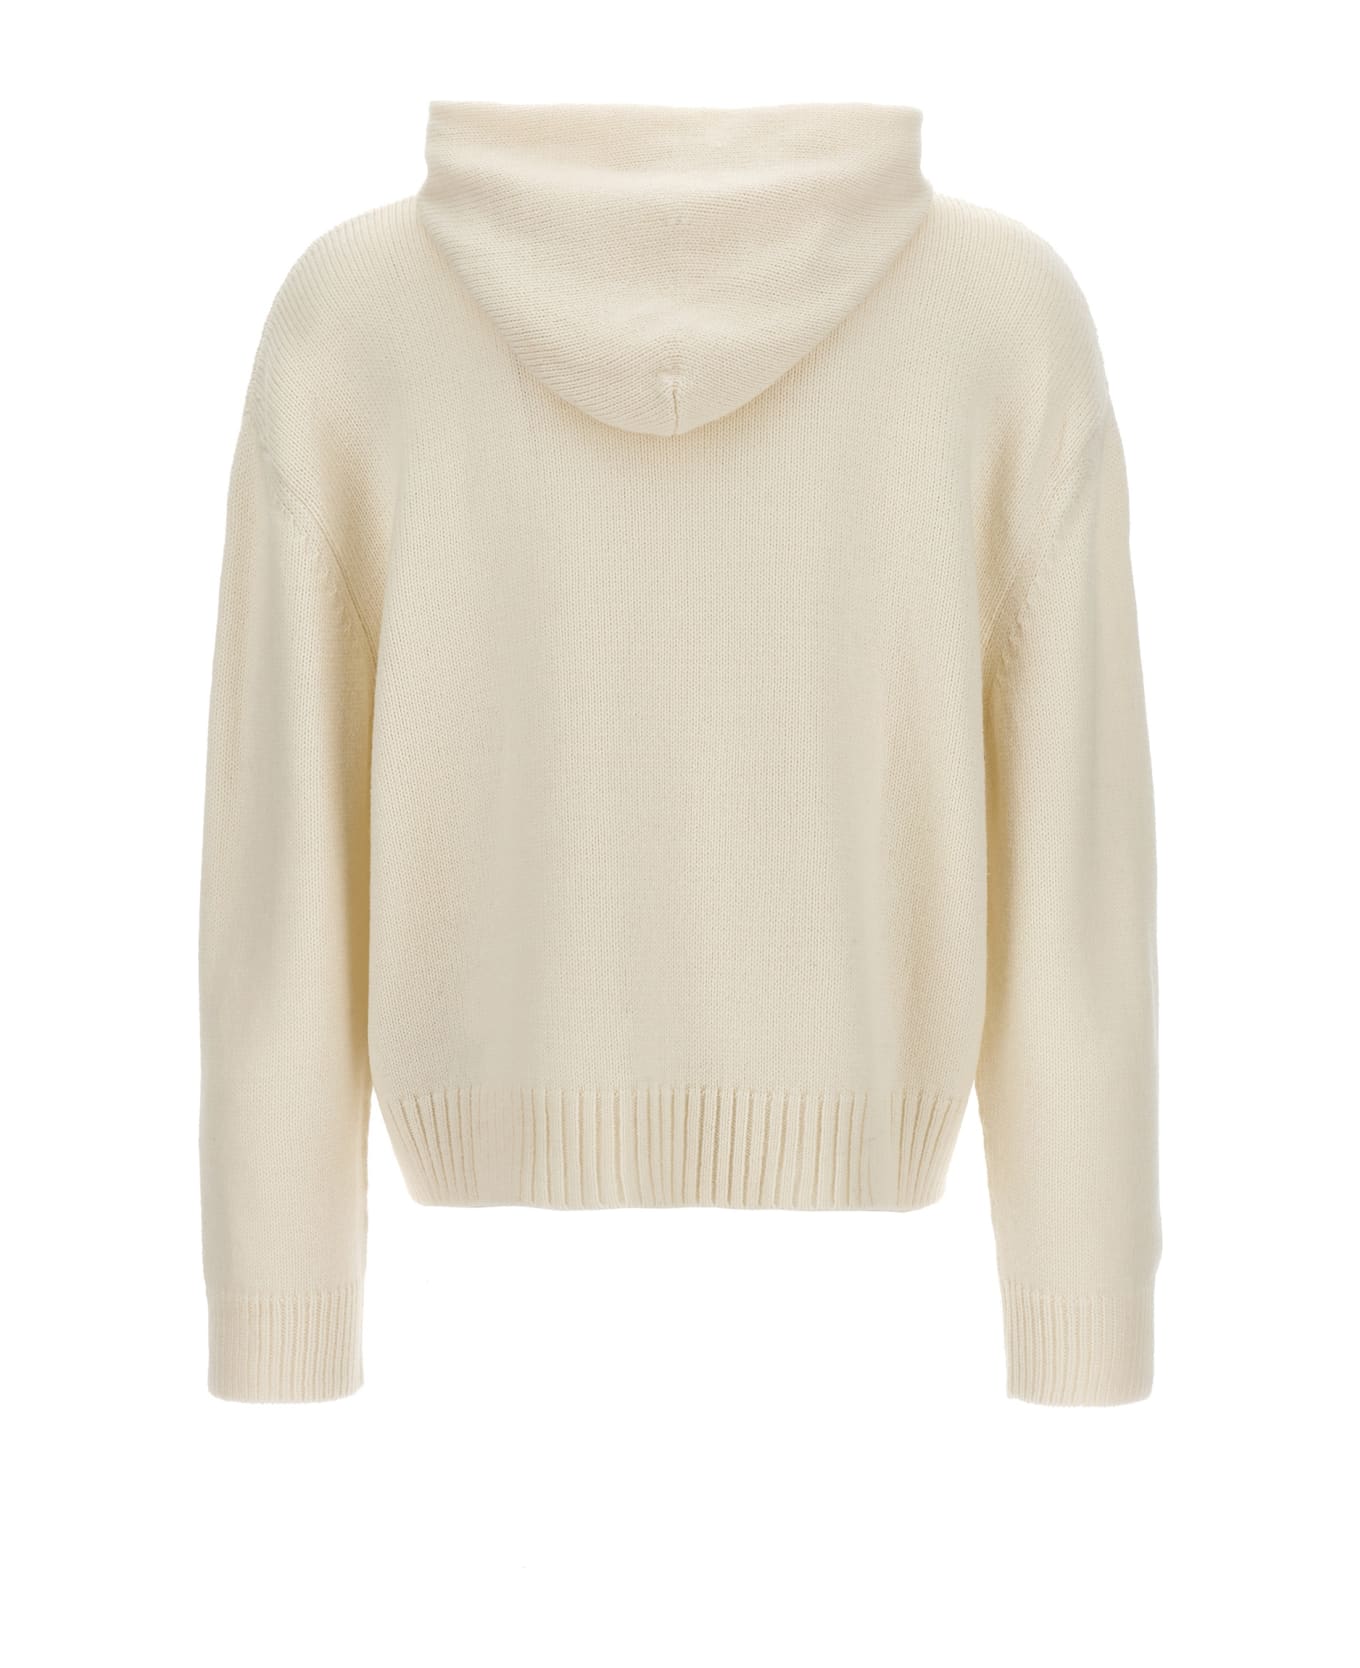 MM6 Maison Margiela 'numeric Signature' Hooded Sweater - White/Black ニットウェア